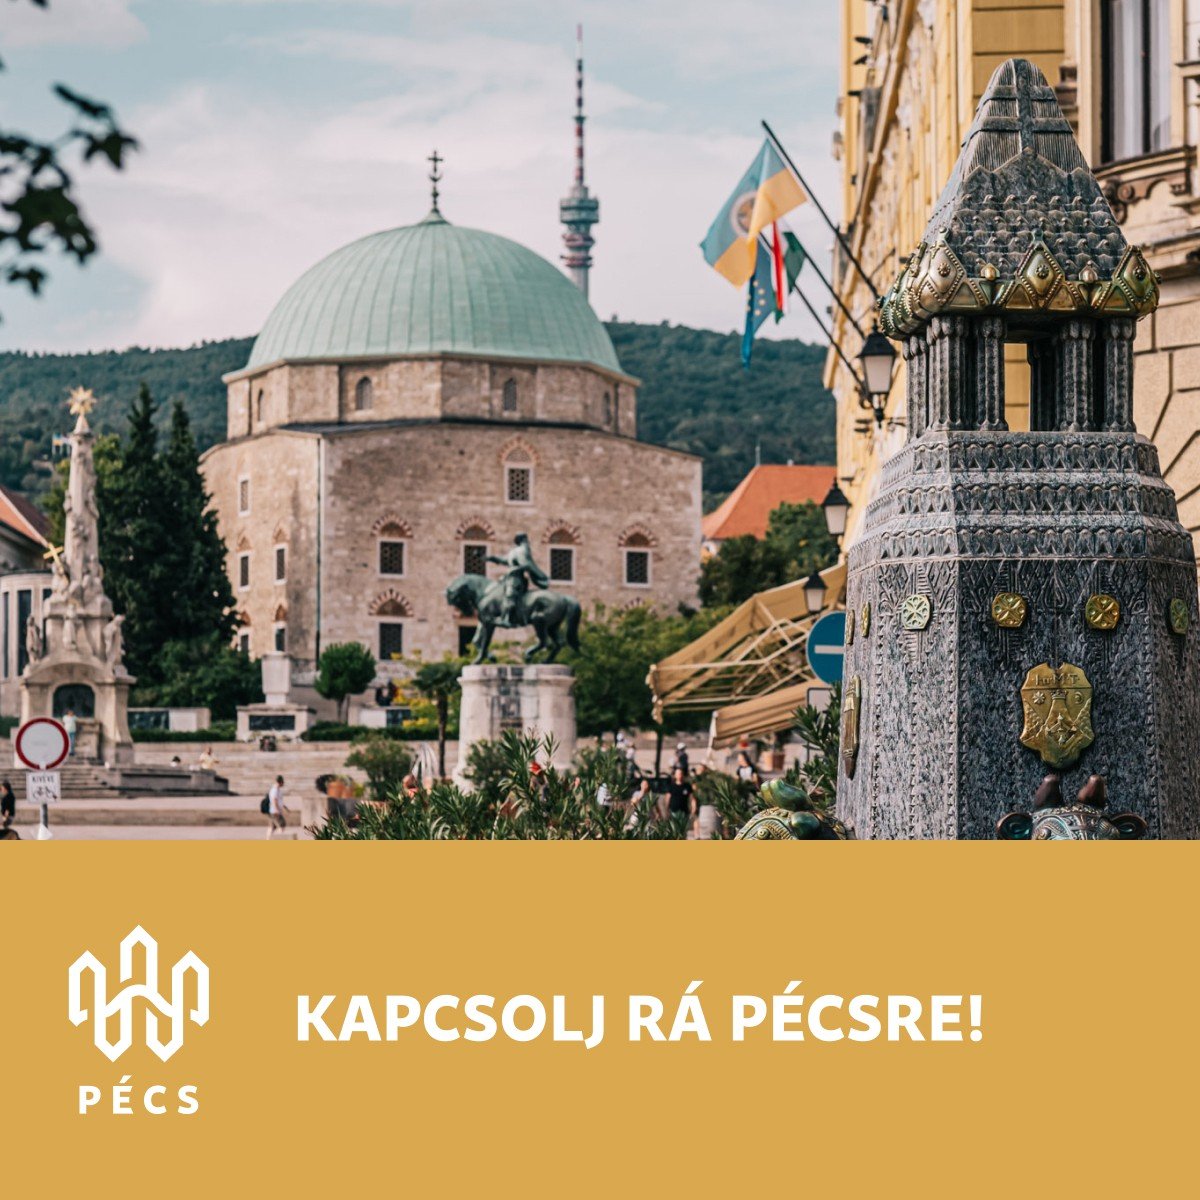 Pécs jó hely! – bemutatkozik Pécs városa